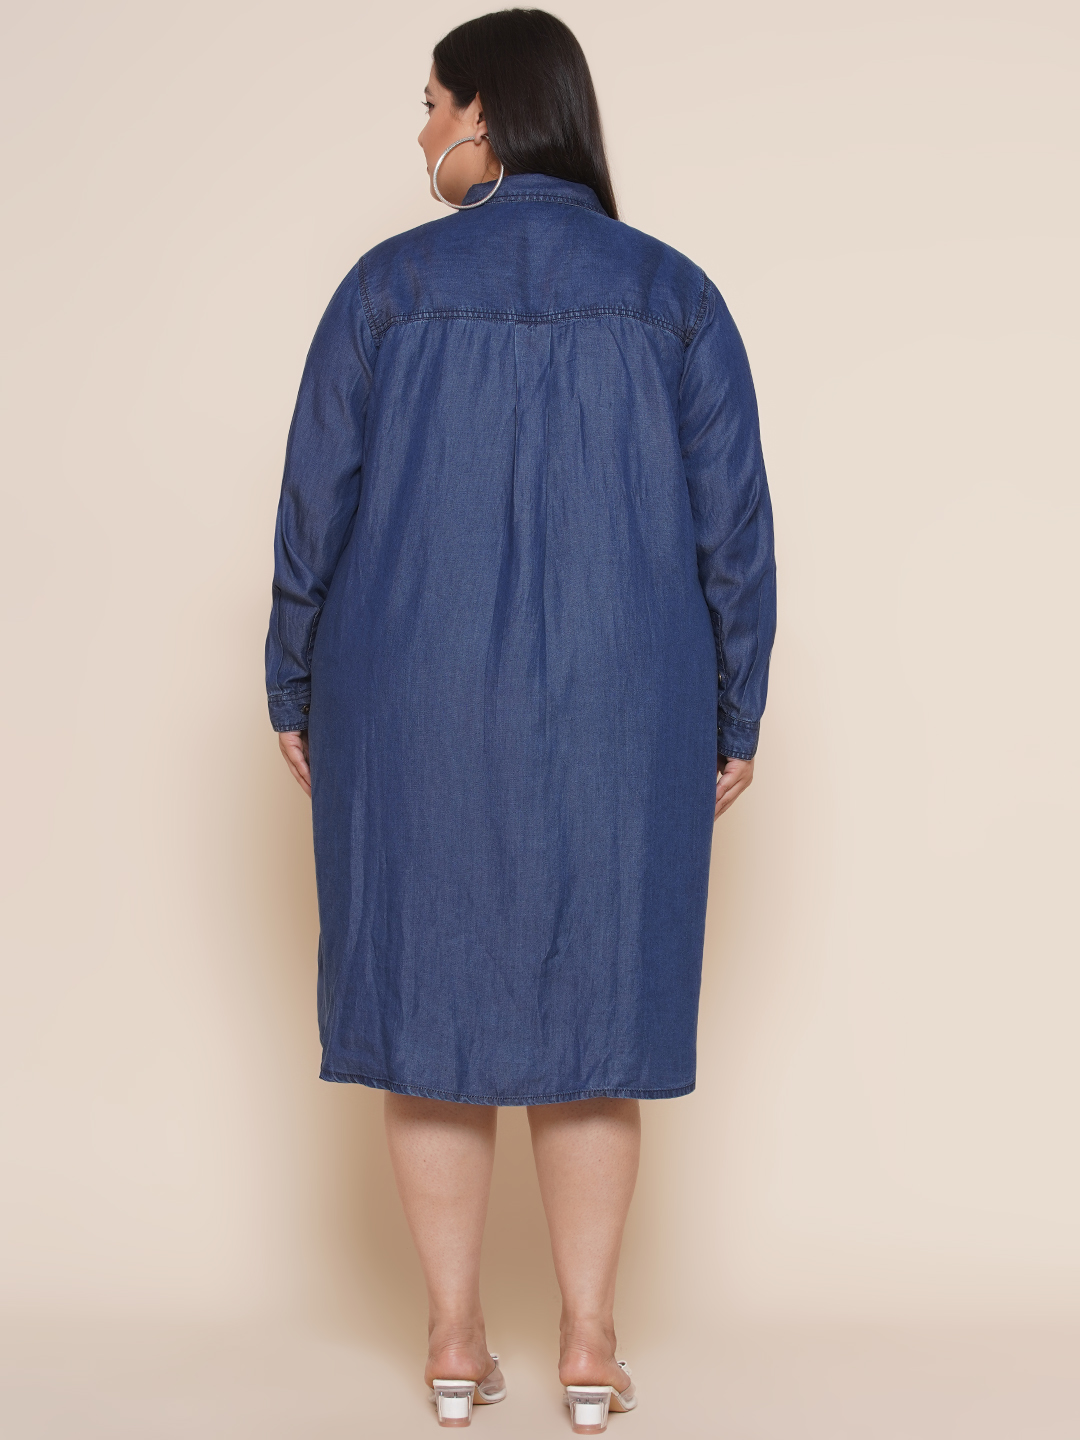 Florence Denim Dress – RubyClaire Boutique